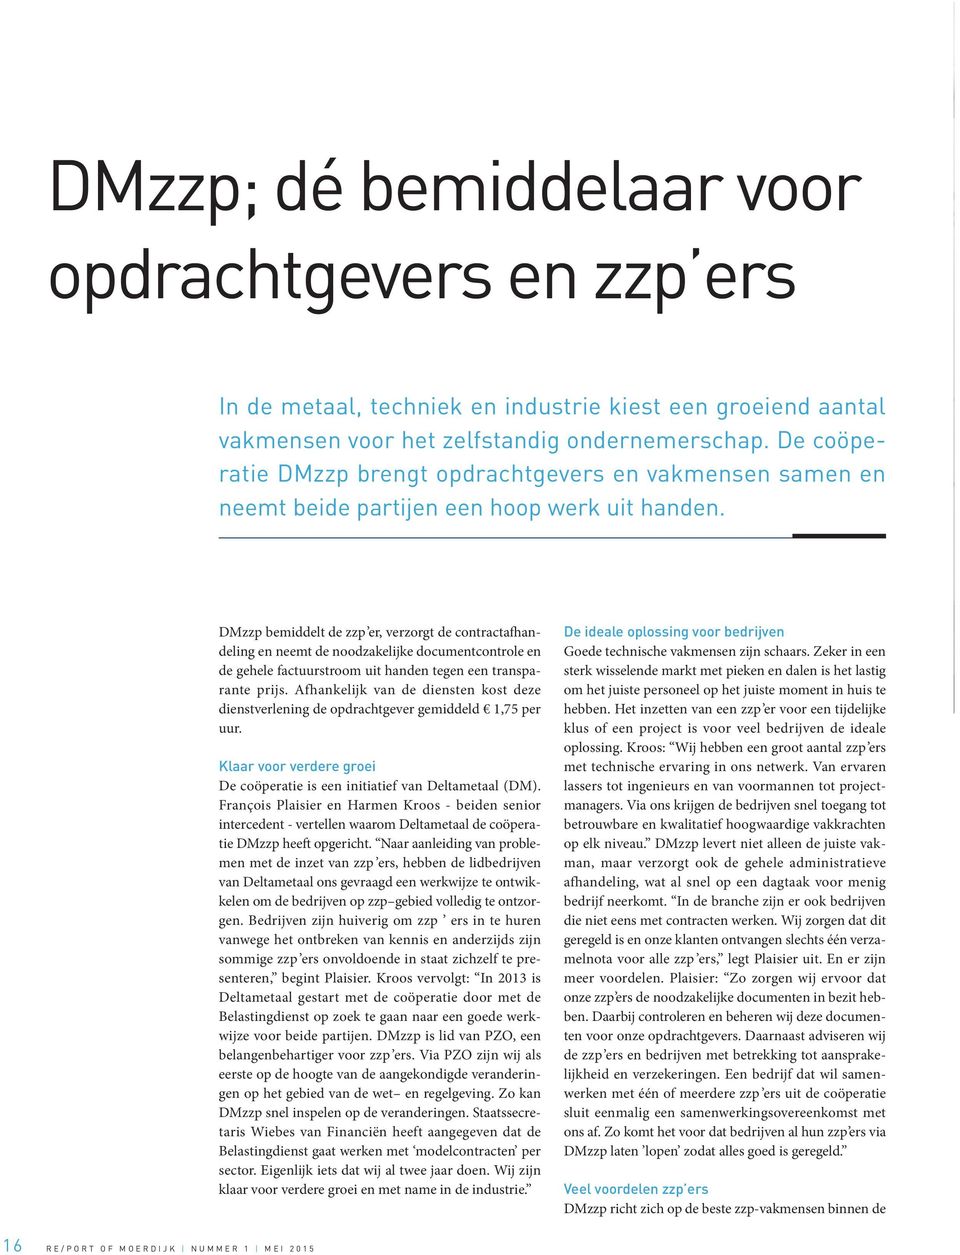 DMzzp bemiddelt de zzp er, verzorgt de contractafhandeling en neemt de noodzakelijke documentcontrole en de gehele factuurstroom uit handen tegen een transparante prijs.